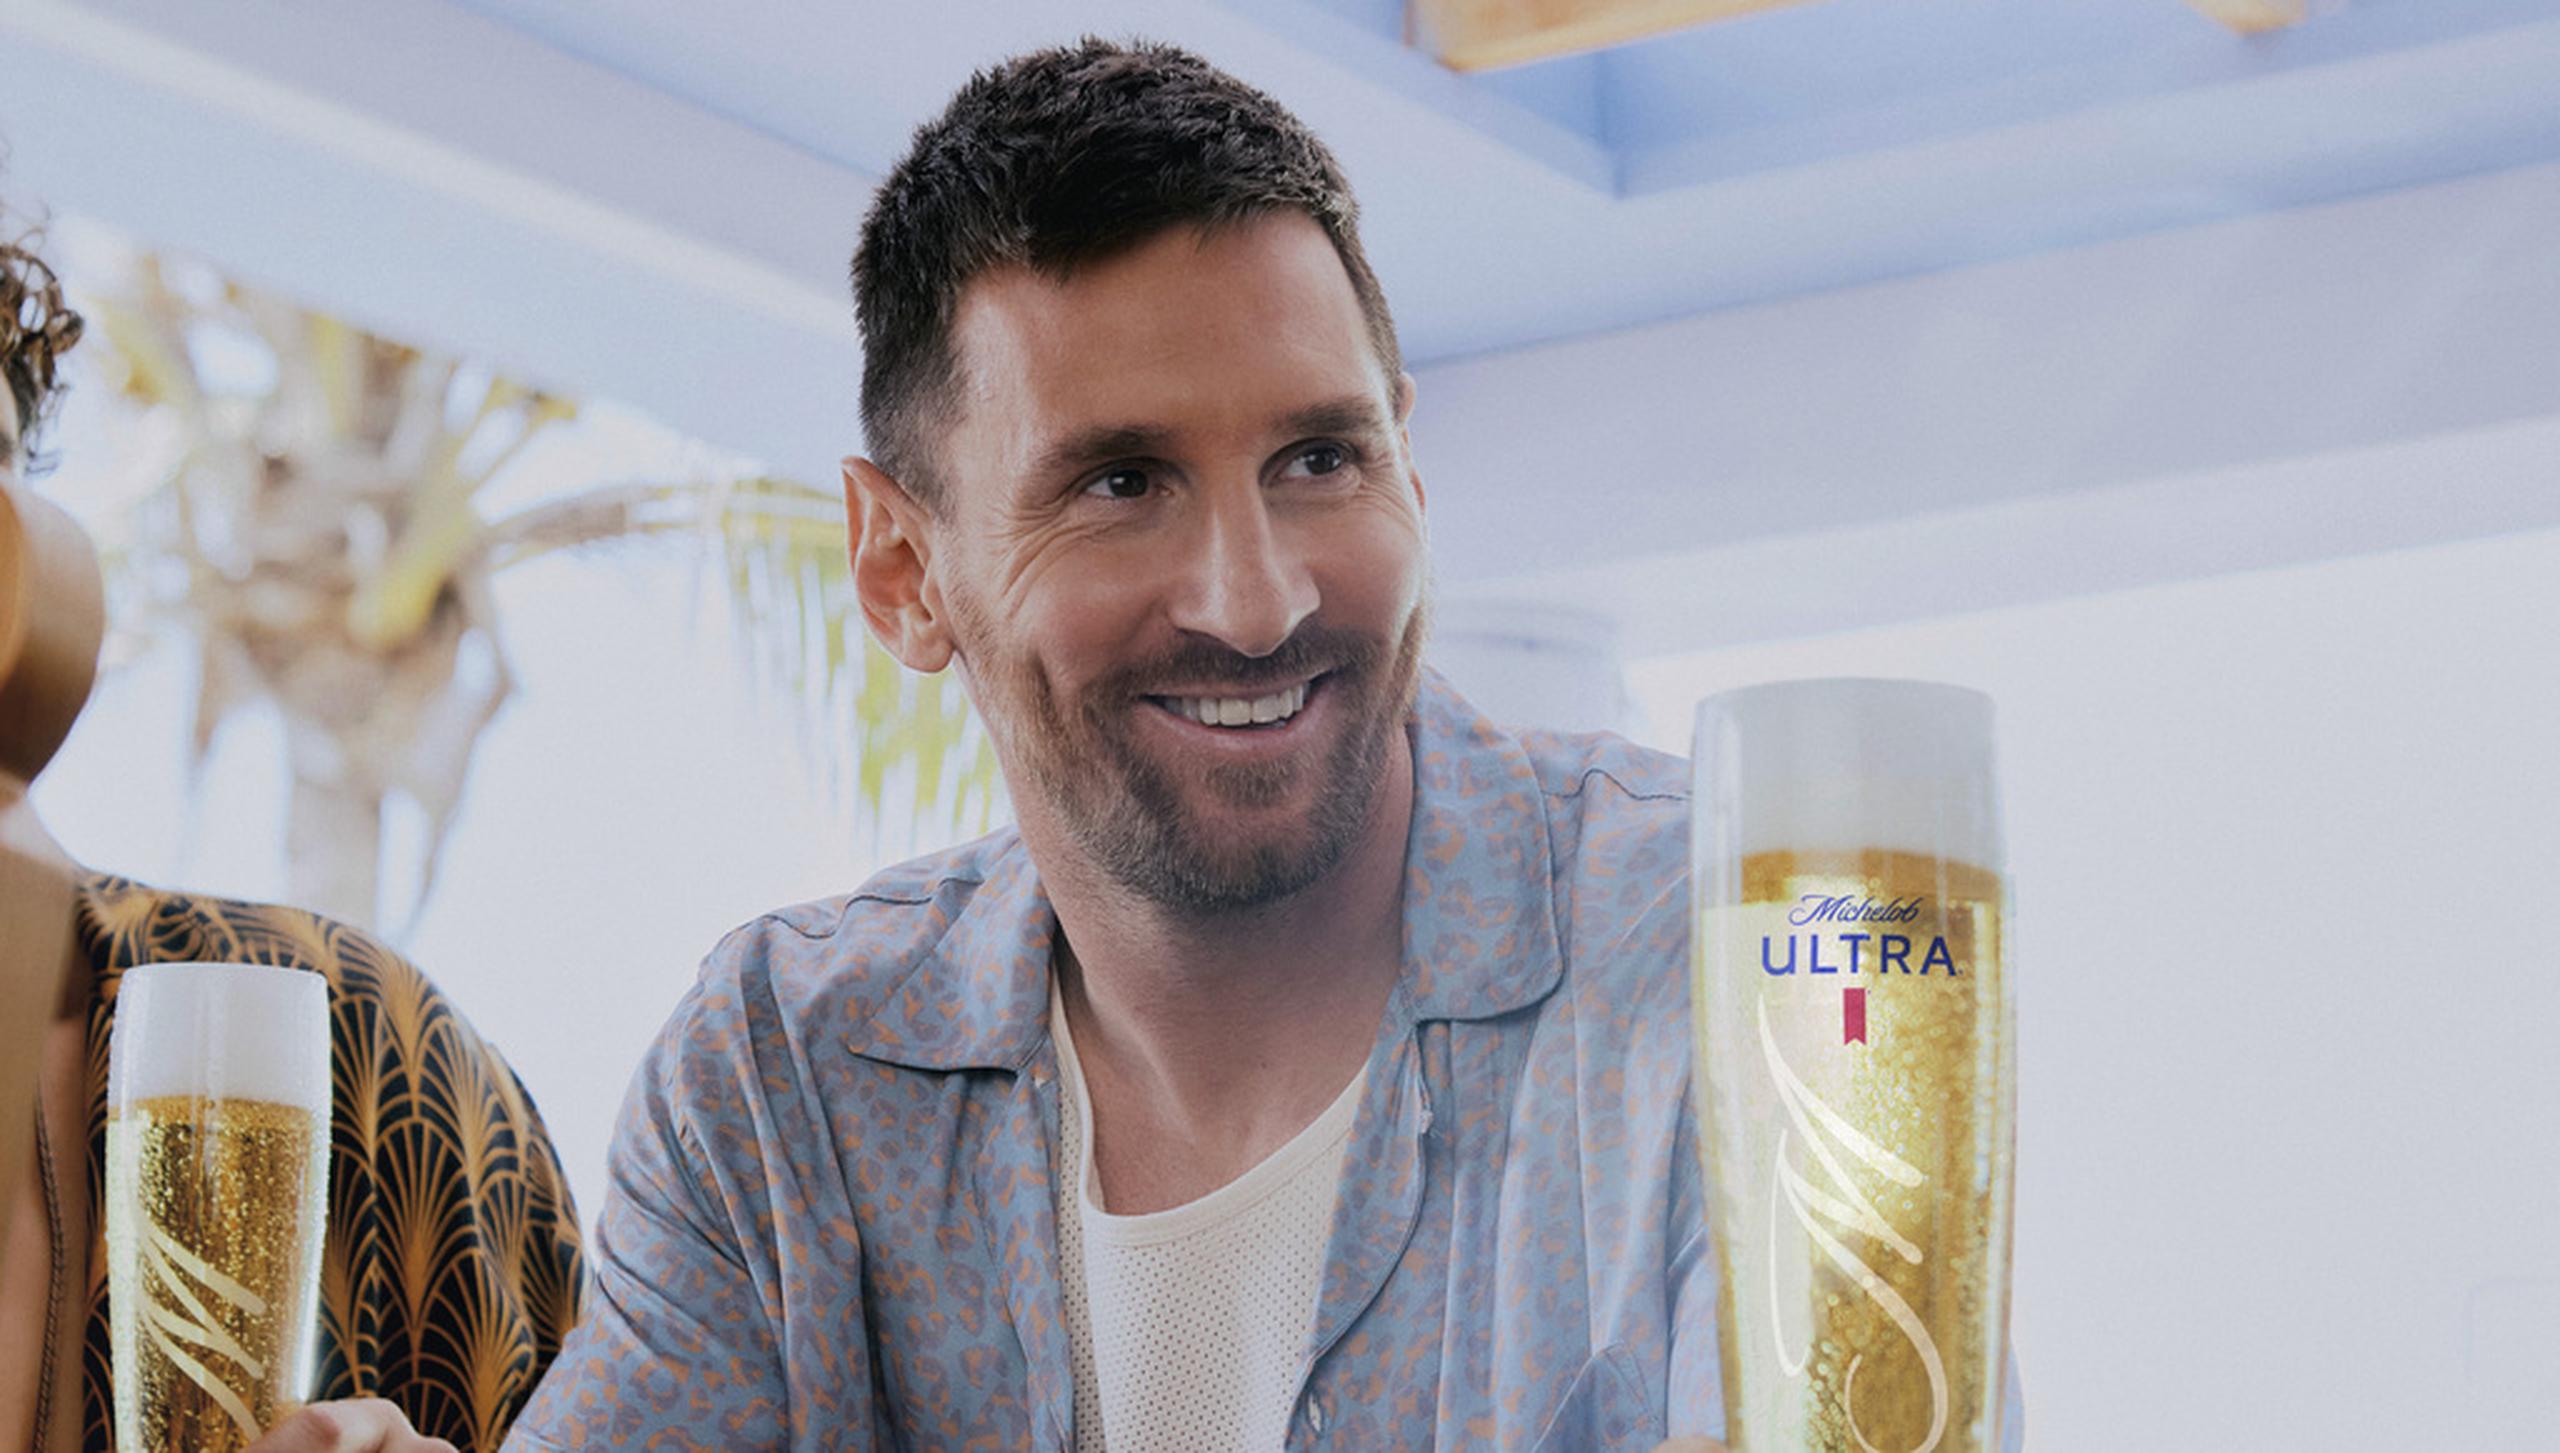 La promoción de Michelob Ultra con Lionel Messi será vista durante el Super Bowl.